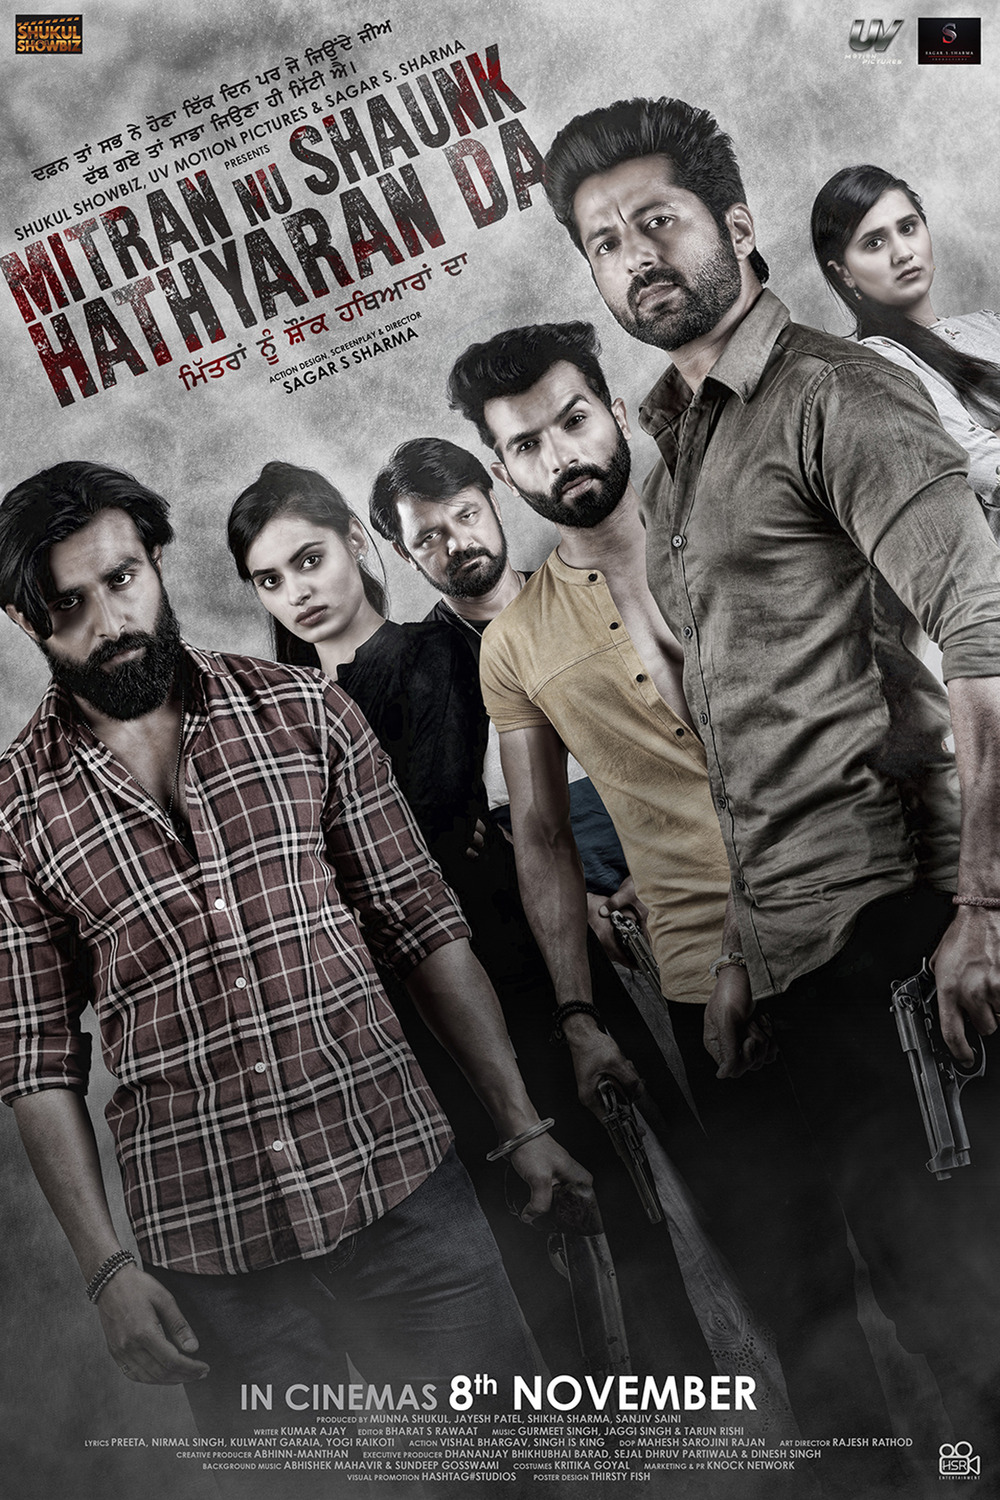 Extra Large Movie Poster Image for Mitran Nu Shaunk Hathyaran Da (#1 of 2)